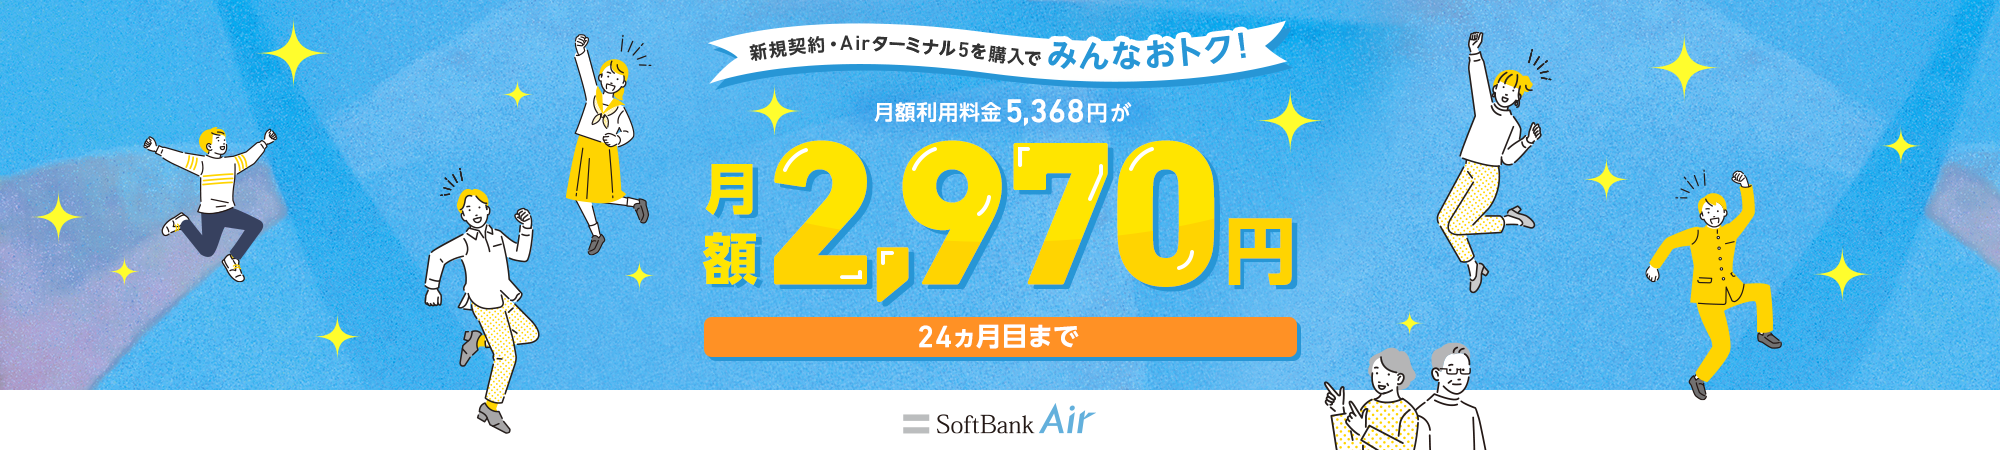 新規契約が対象！月額利用料金 5,368円が月額1,980円 6ヵ月目まで SoftBank Air